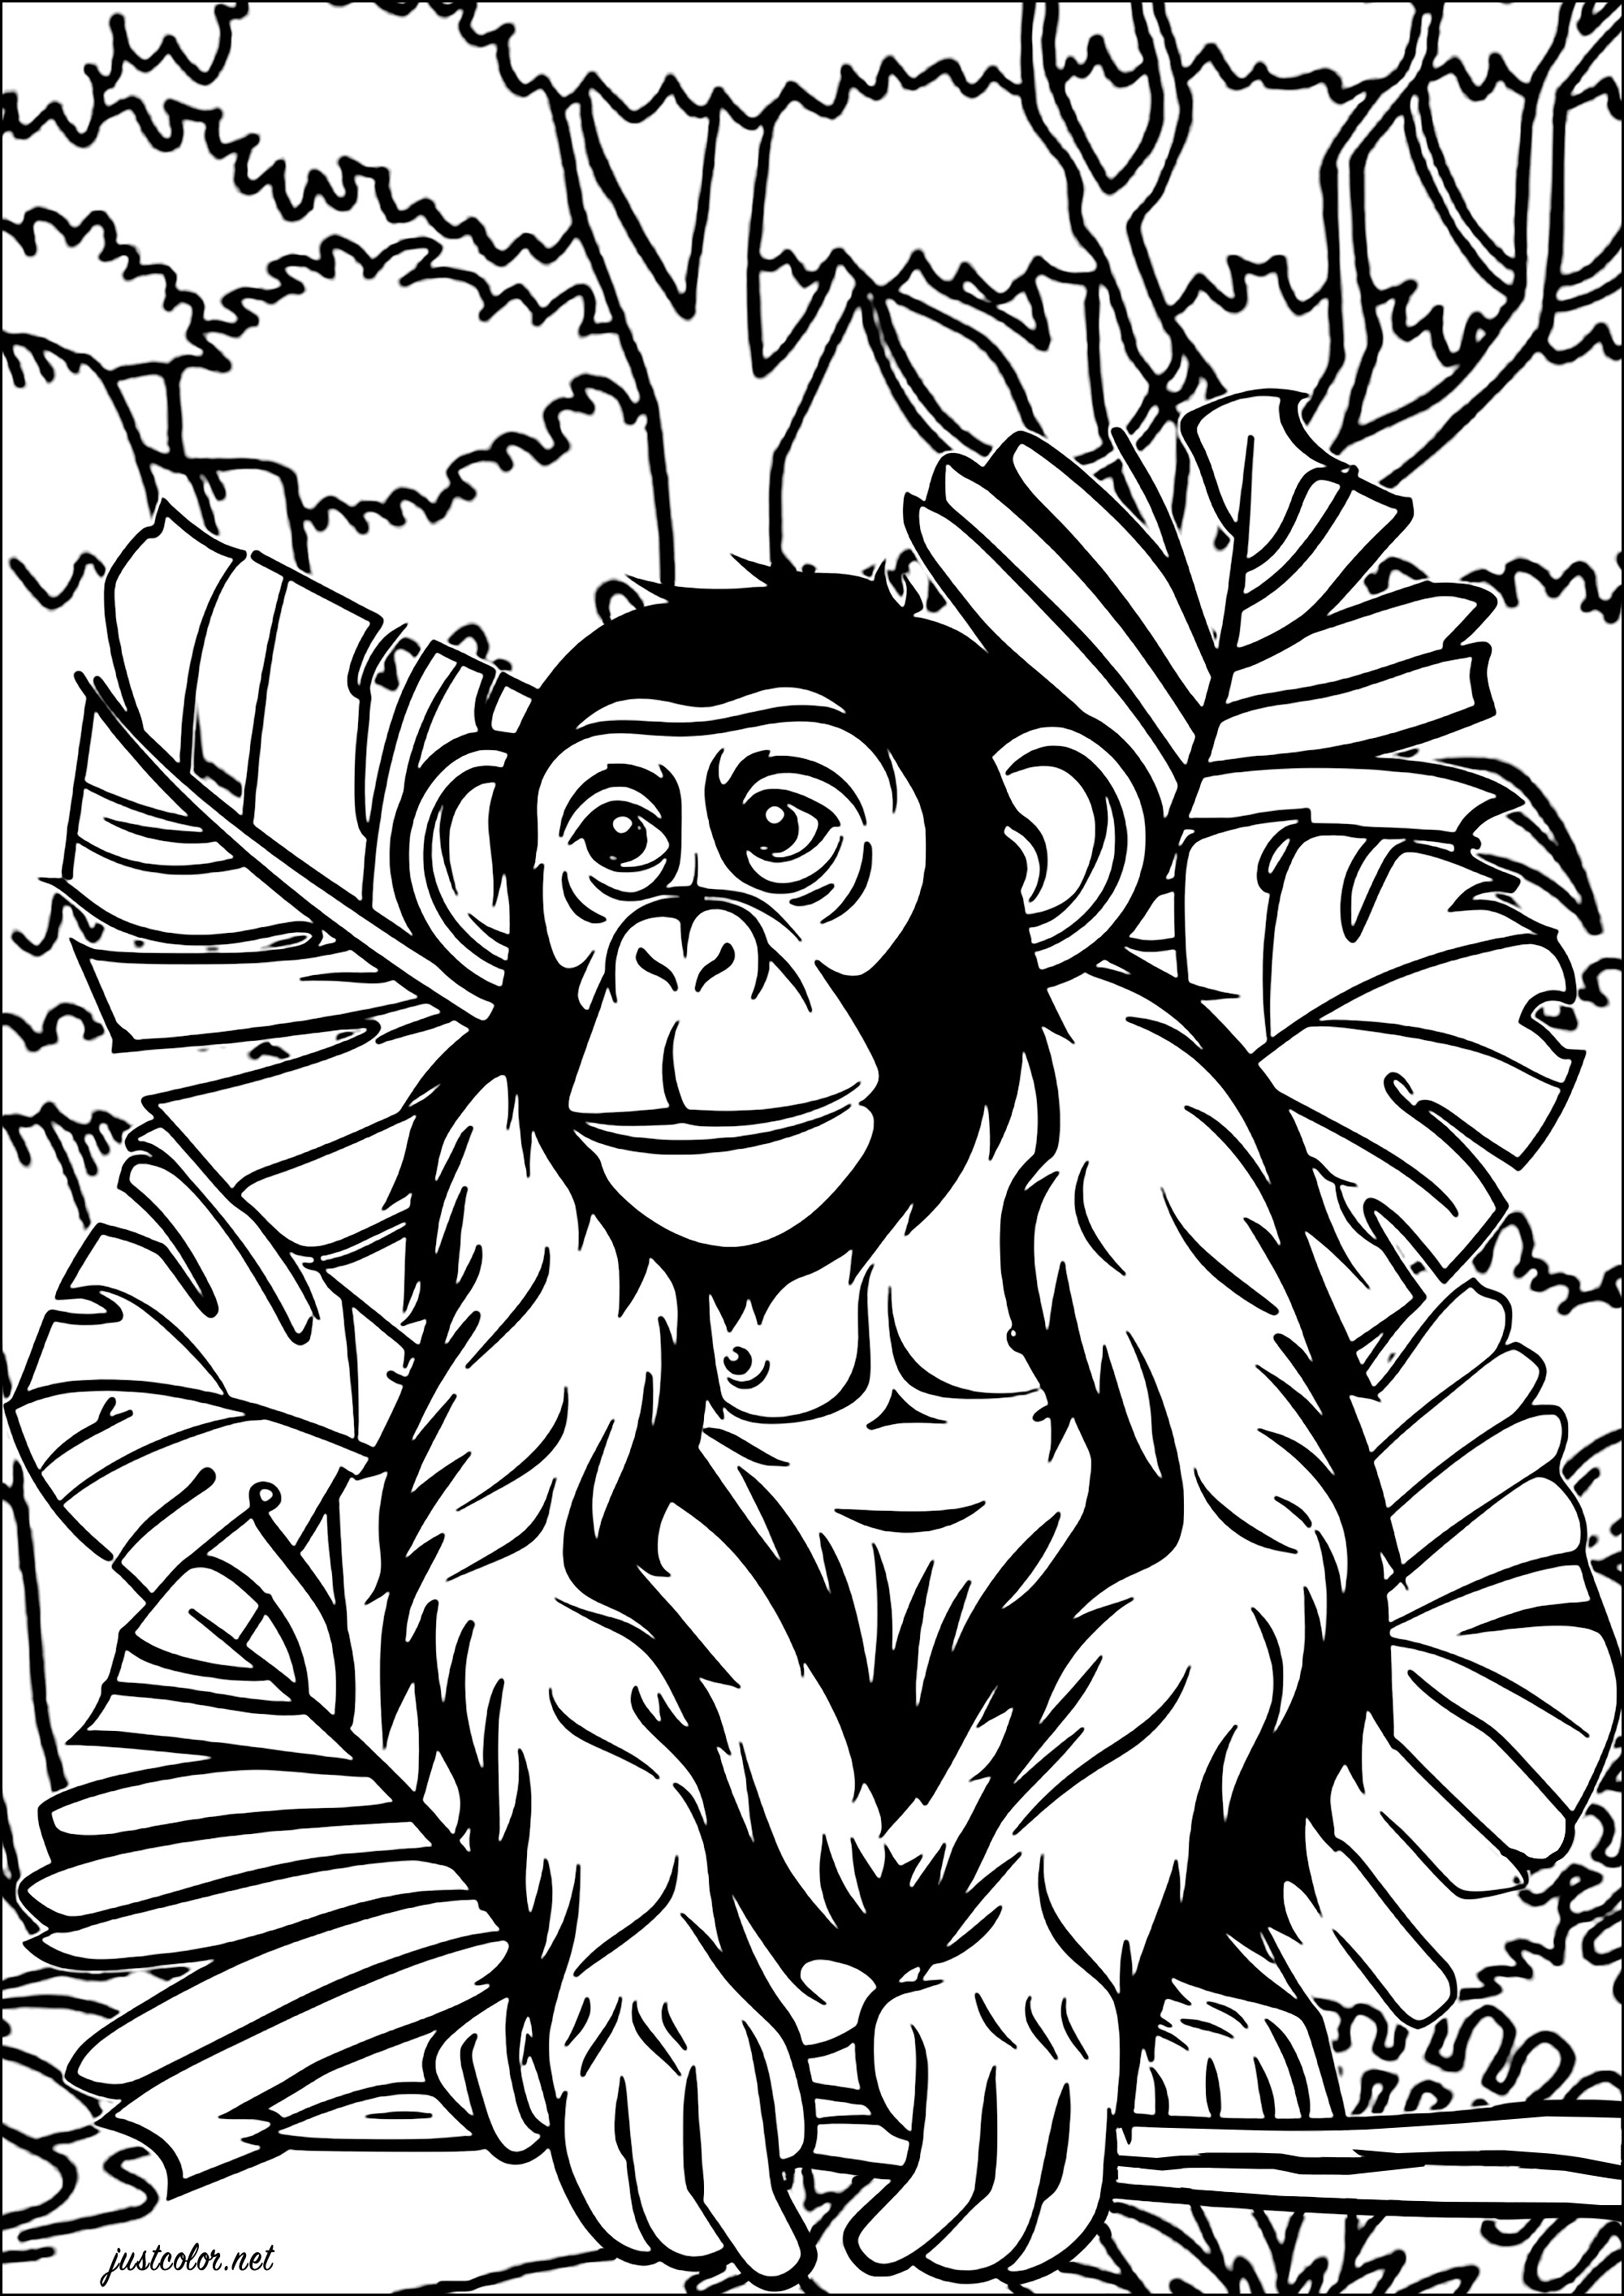 Schimpanse im Dschungel. Eine sehr realistische Zeichnung eines Schimpansen zum Ausmalen, mit großen Blättern und riesigen Bäumen im Hintergrund.